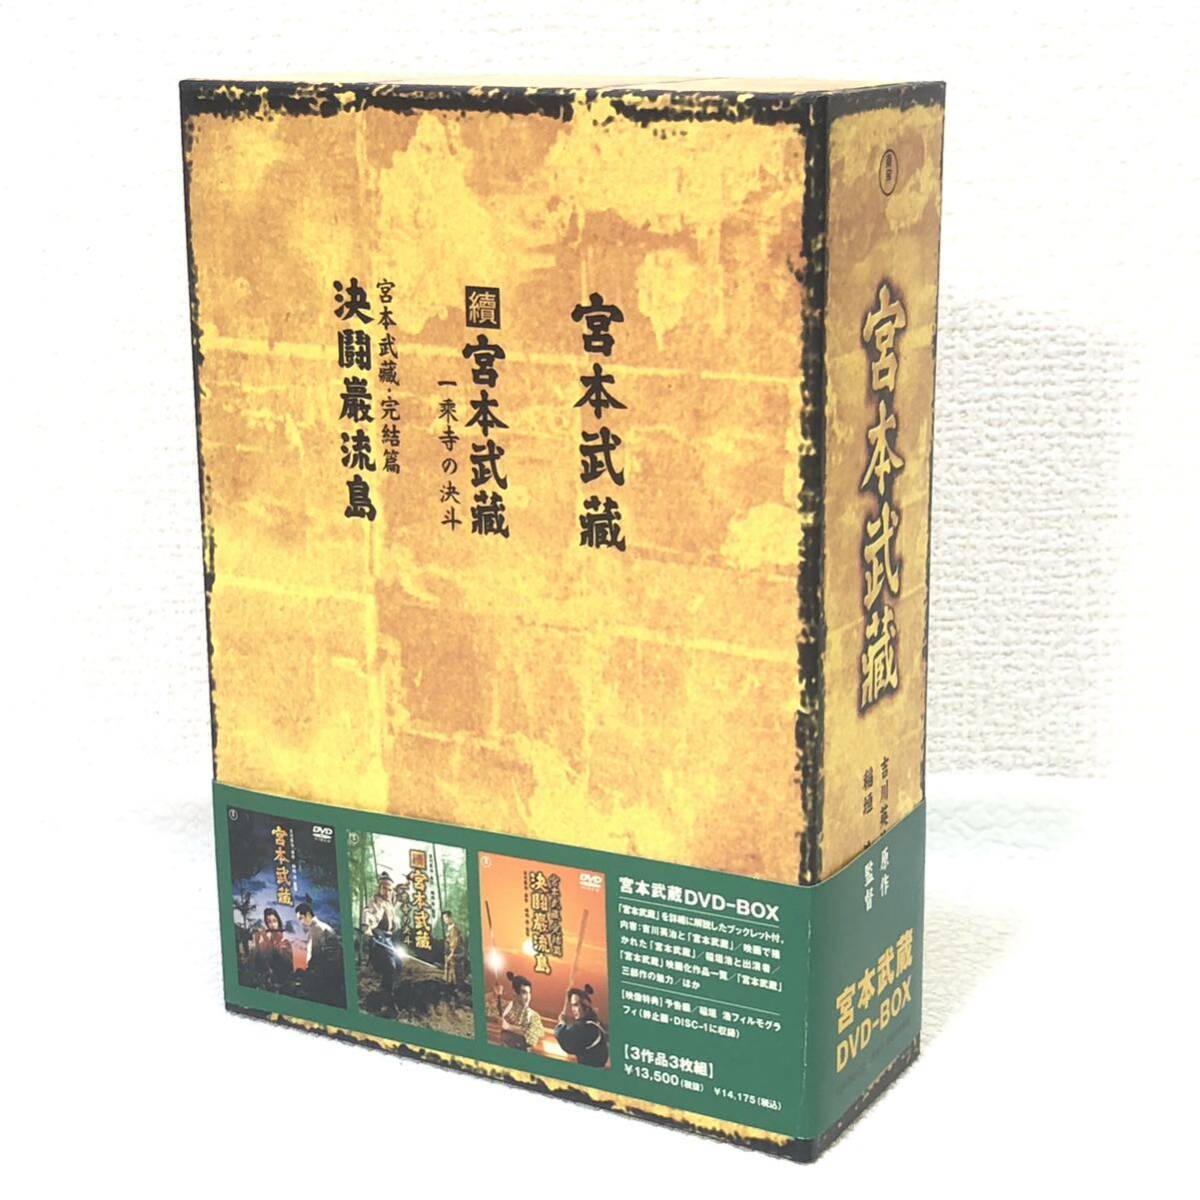  восток . Miyamoto Musashi DVD-BOX 3 часть произведение буклет есть один . храм. решение . решение ... остров оригинальное произведение Yoshikawa Eiji 